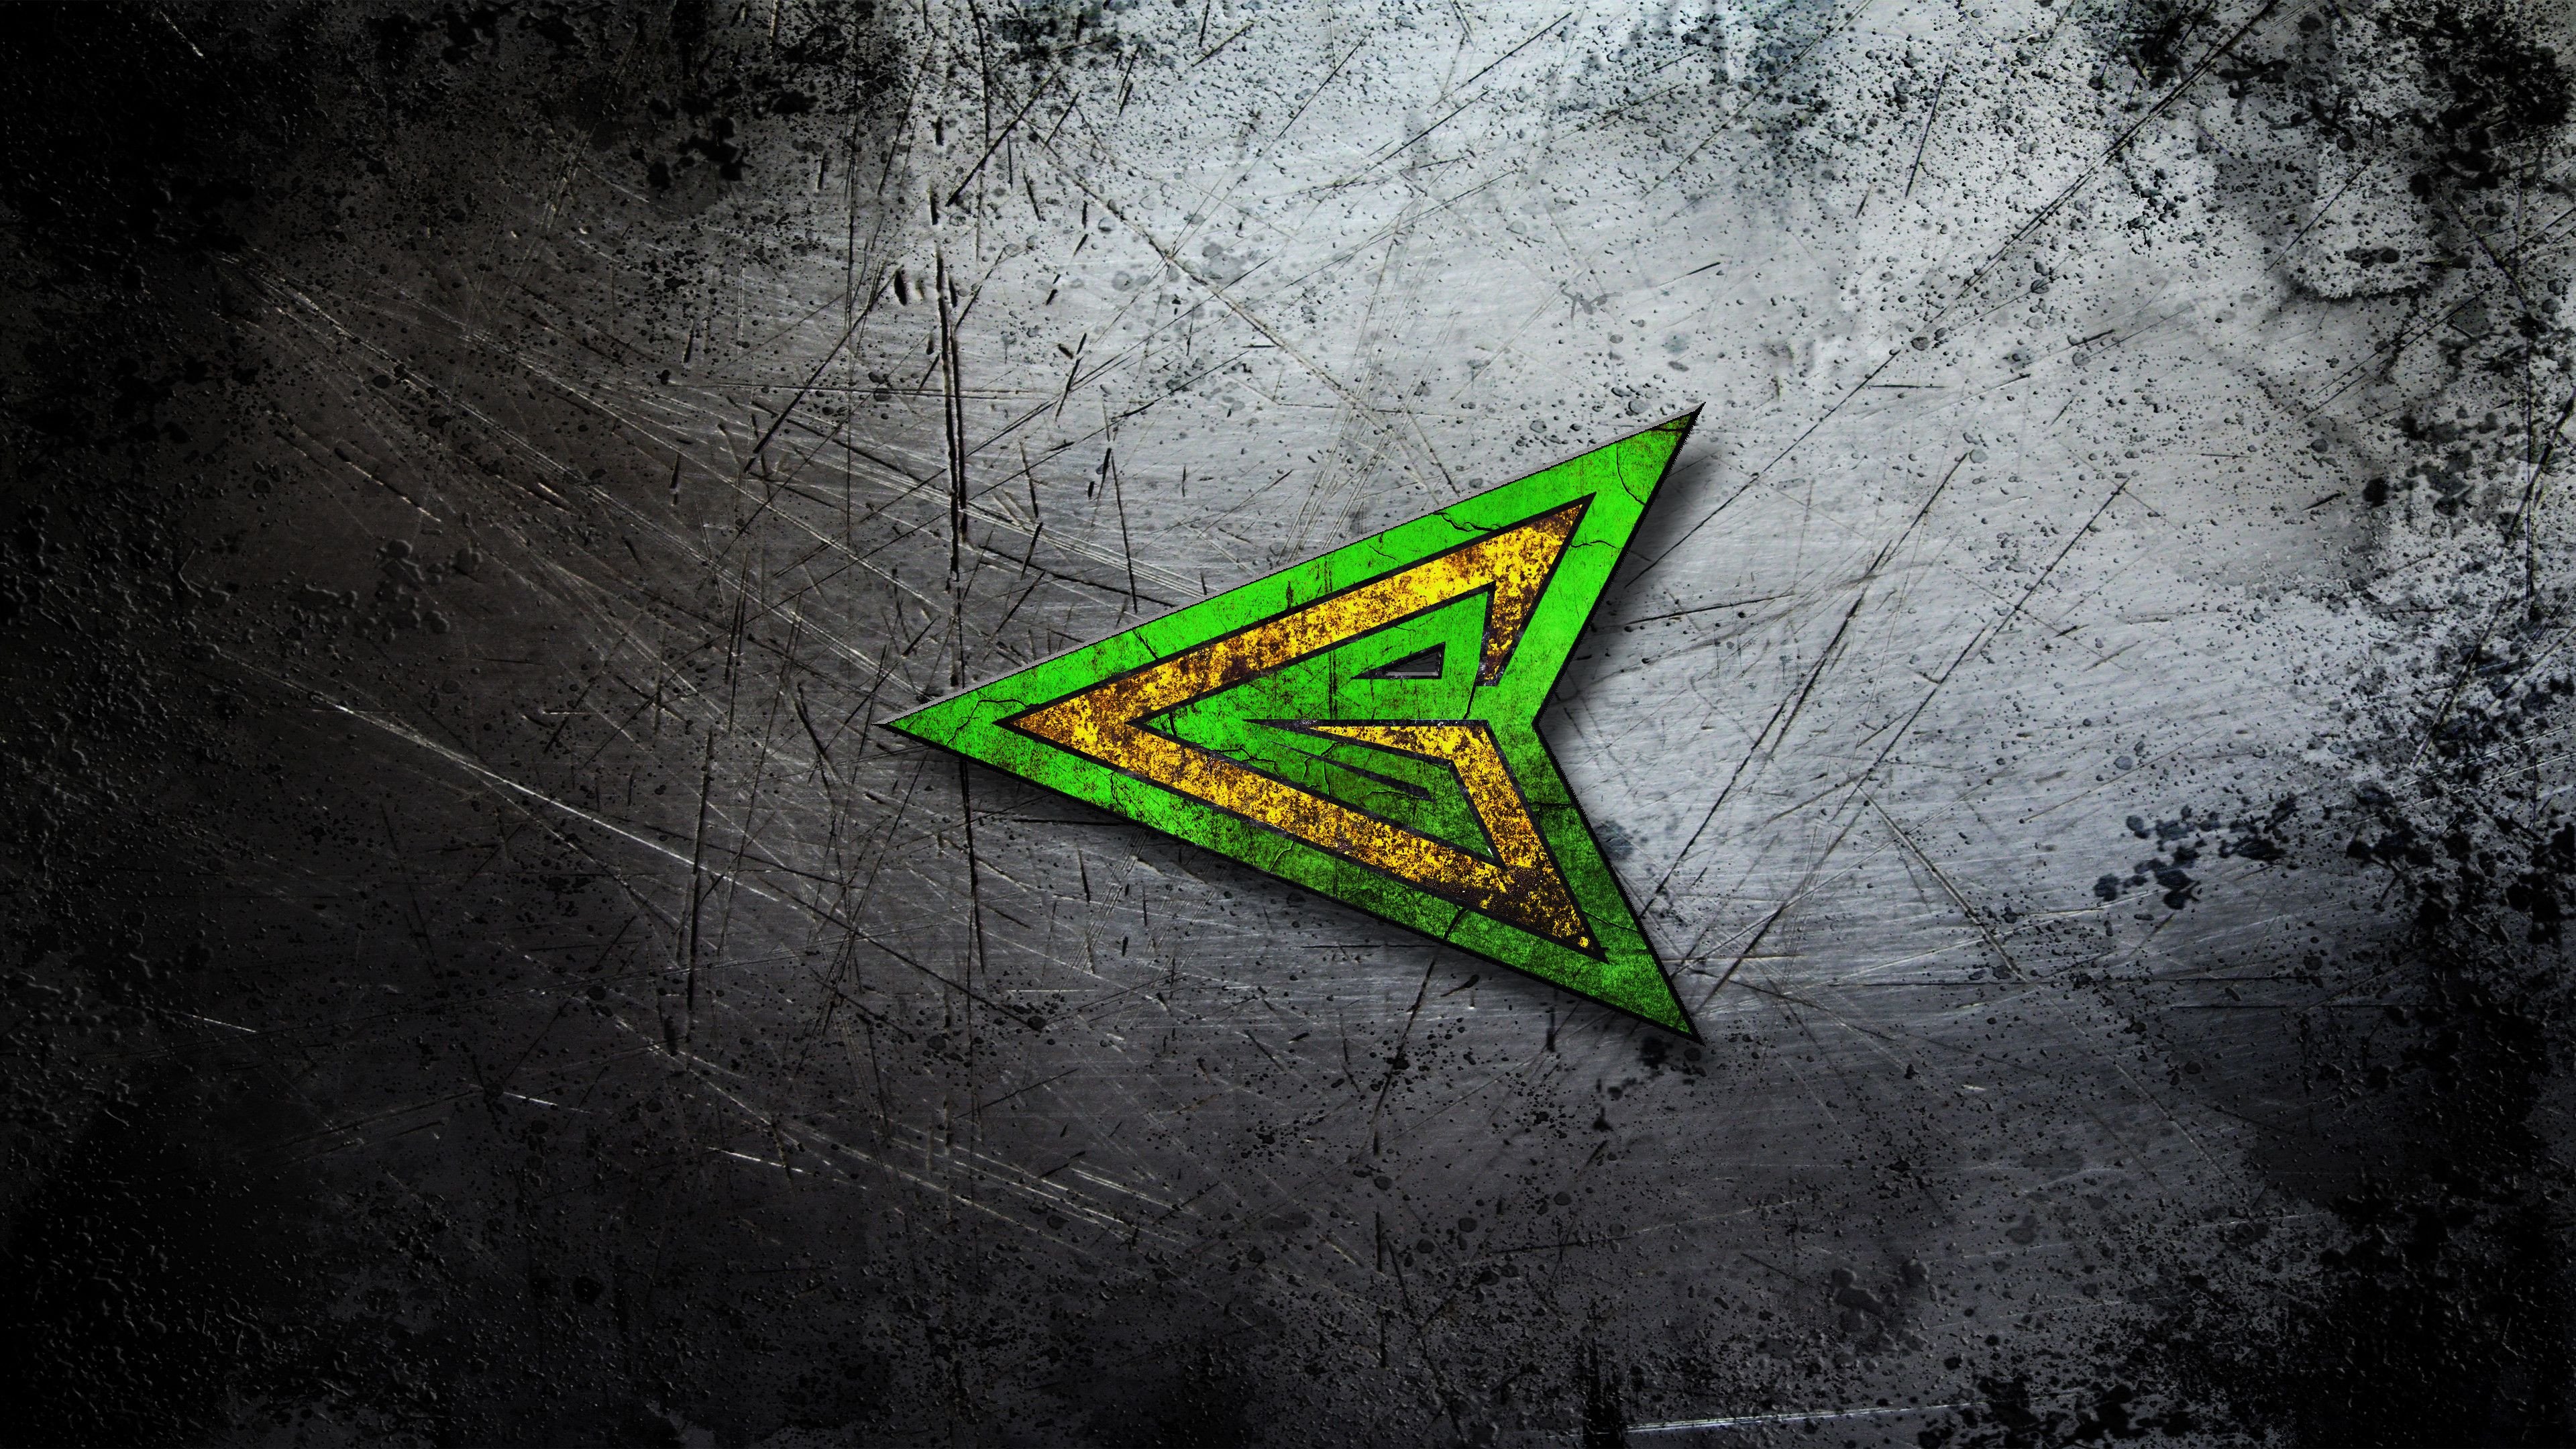 green arrow logos